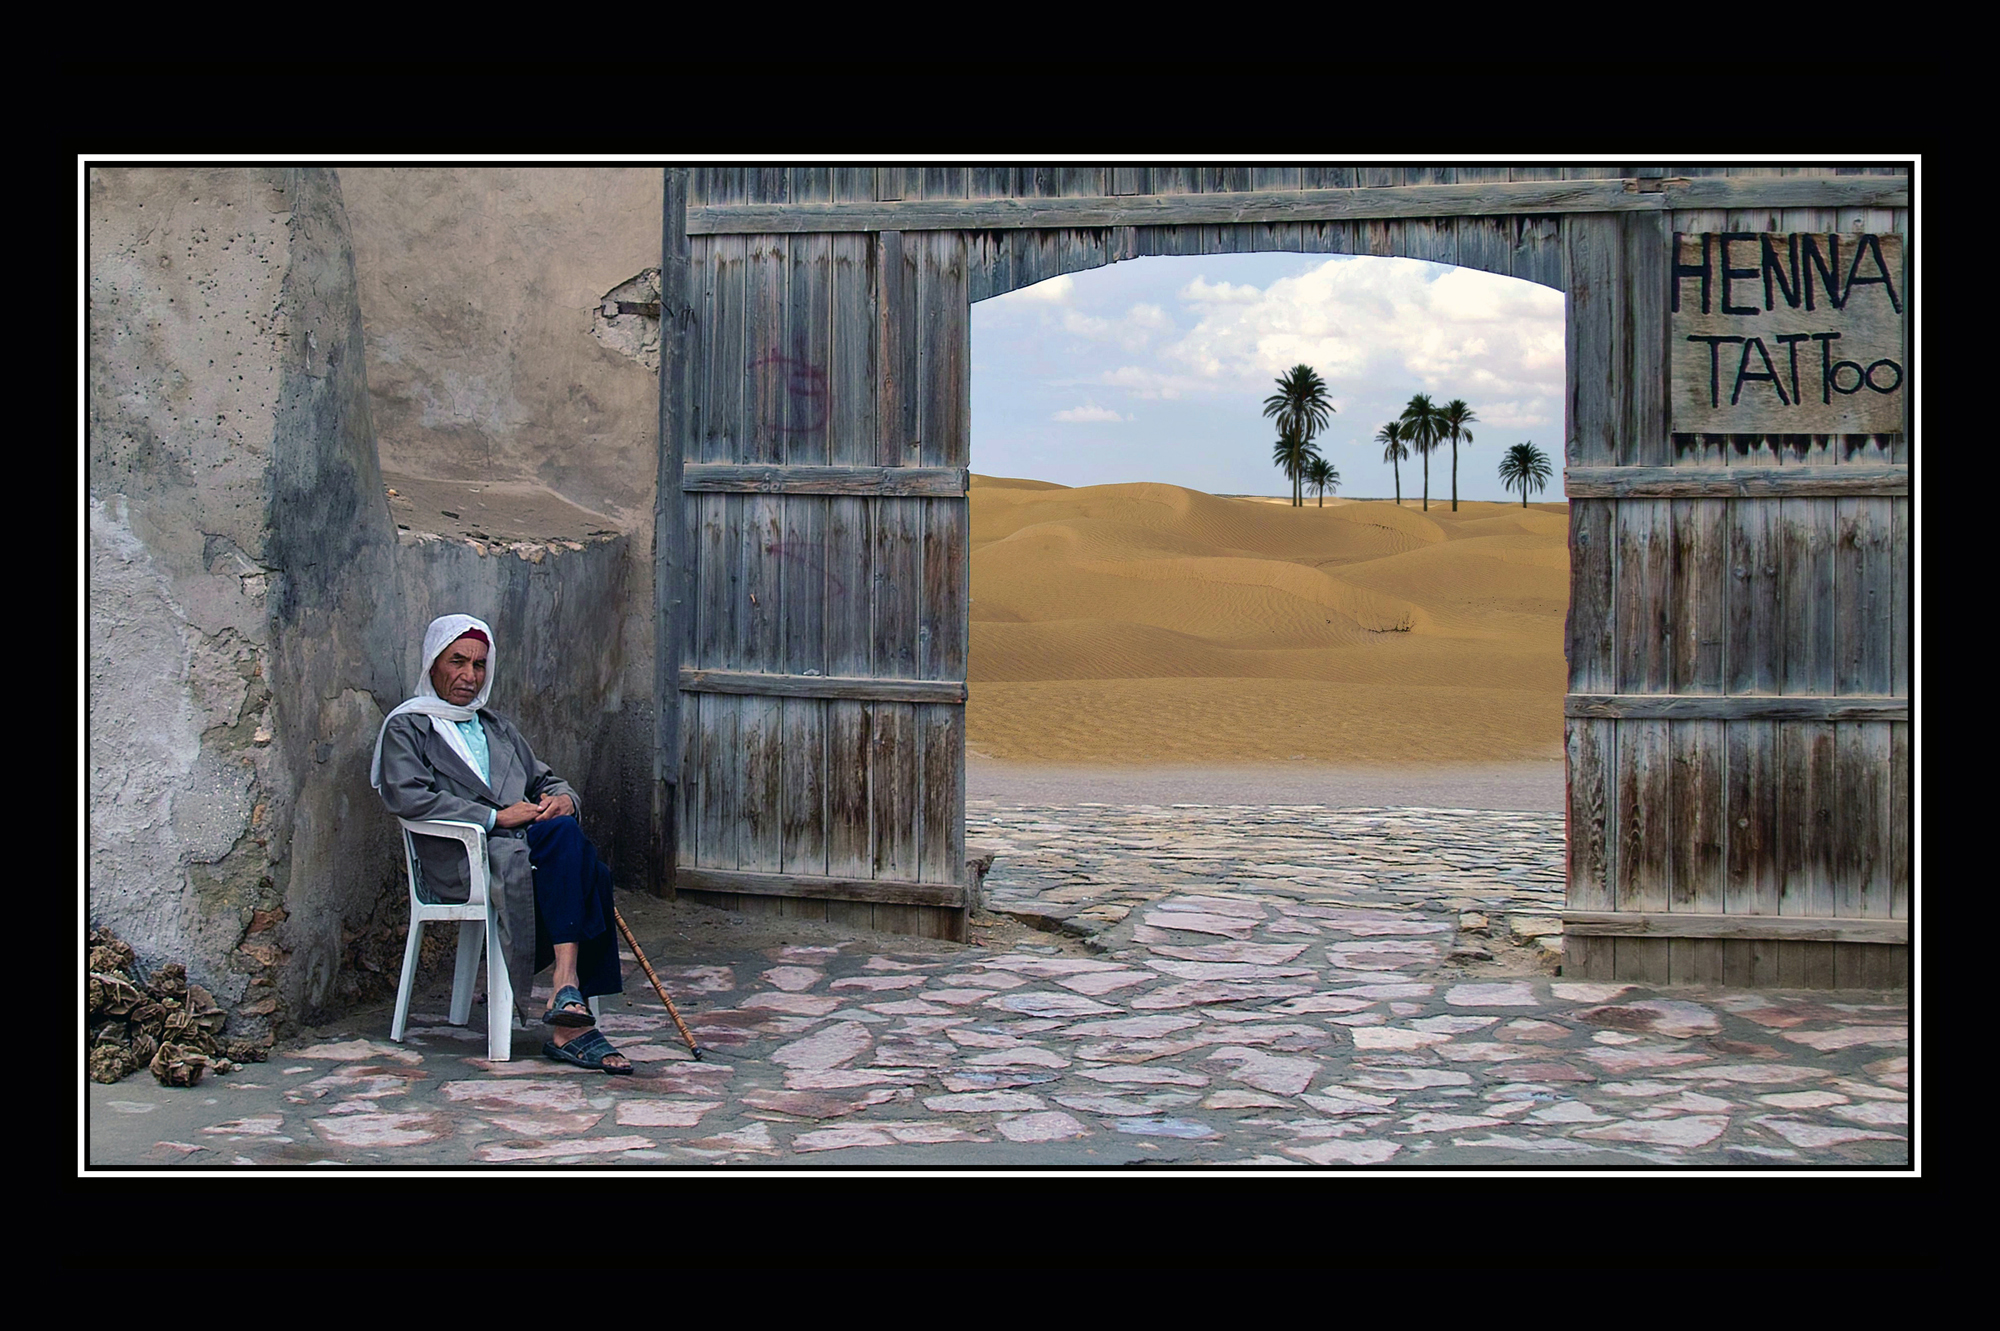 08-The gate of Sahara.jpg